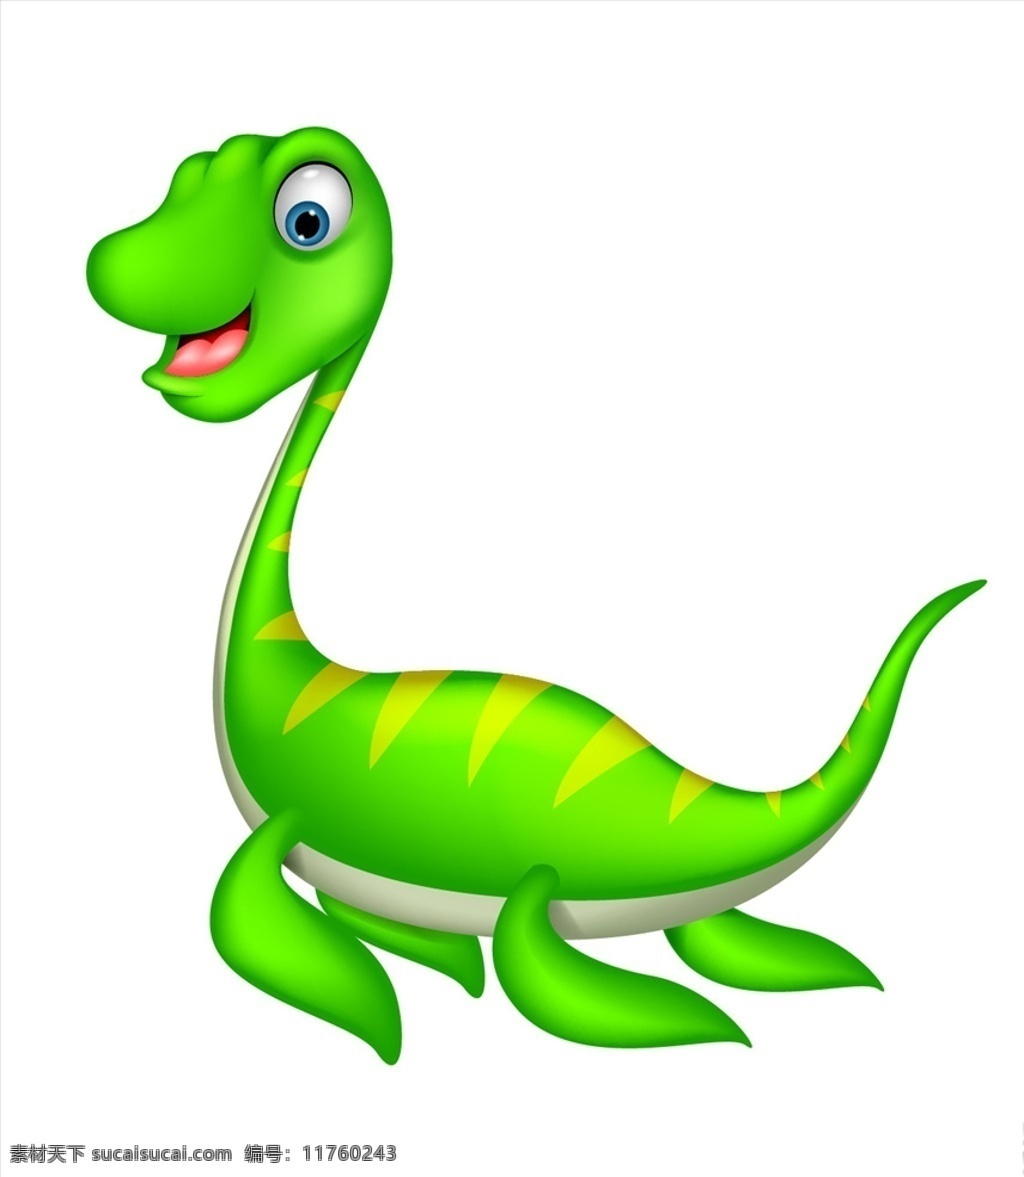 矢量恐龙 手绘恐龙 卡通恐龙 恐龙插画 绿色恐龙 可爱恐龙 小恐龙 恐怖恐龙 恐龙速写 动物 生物世界 野生动物